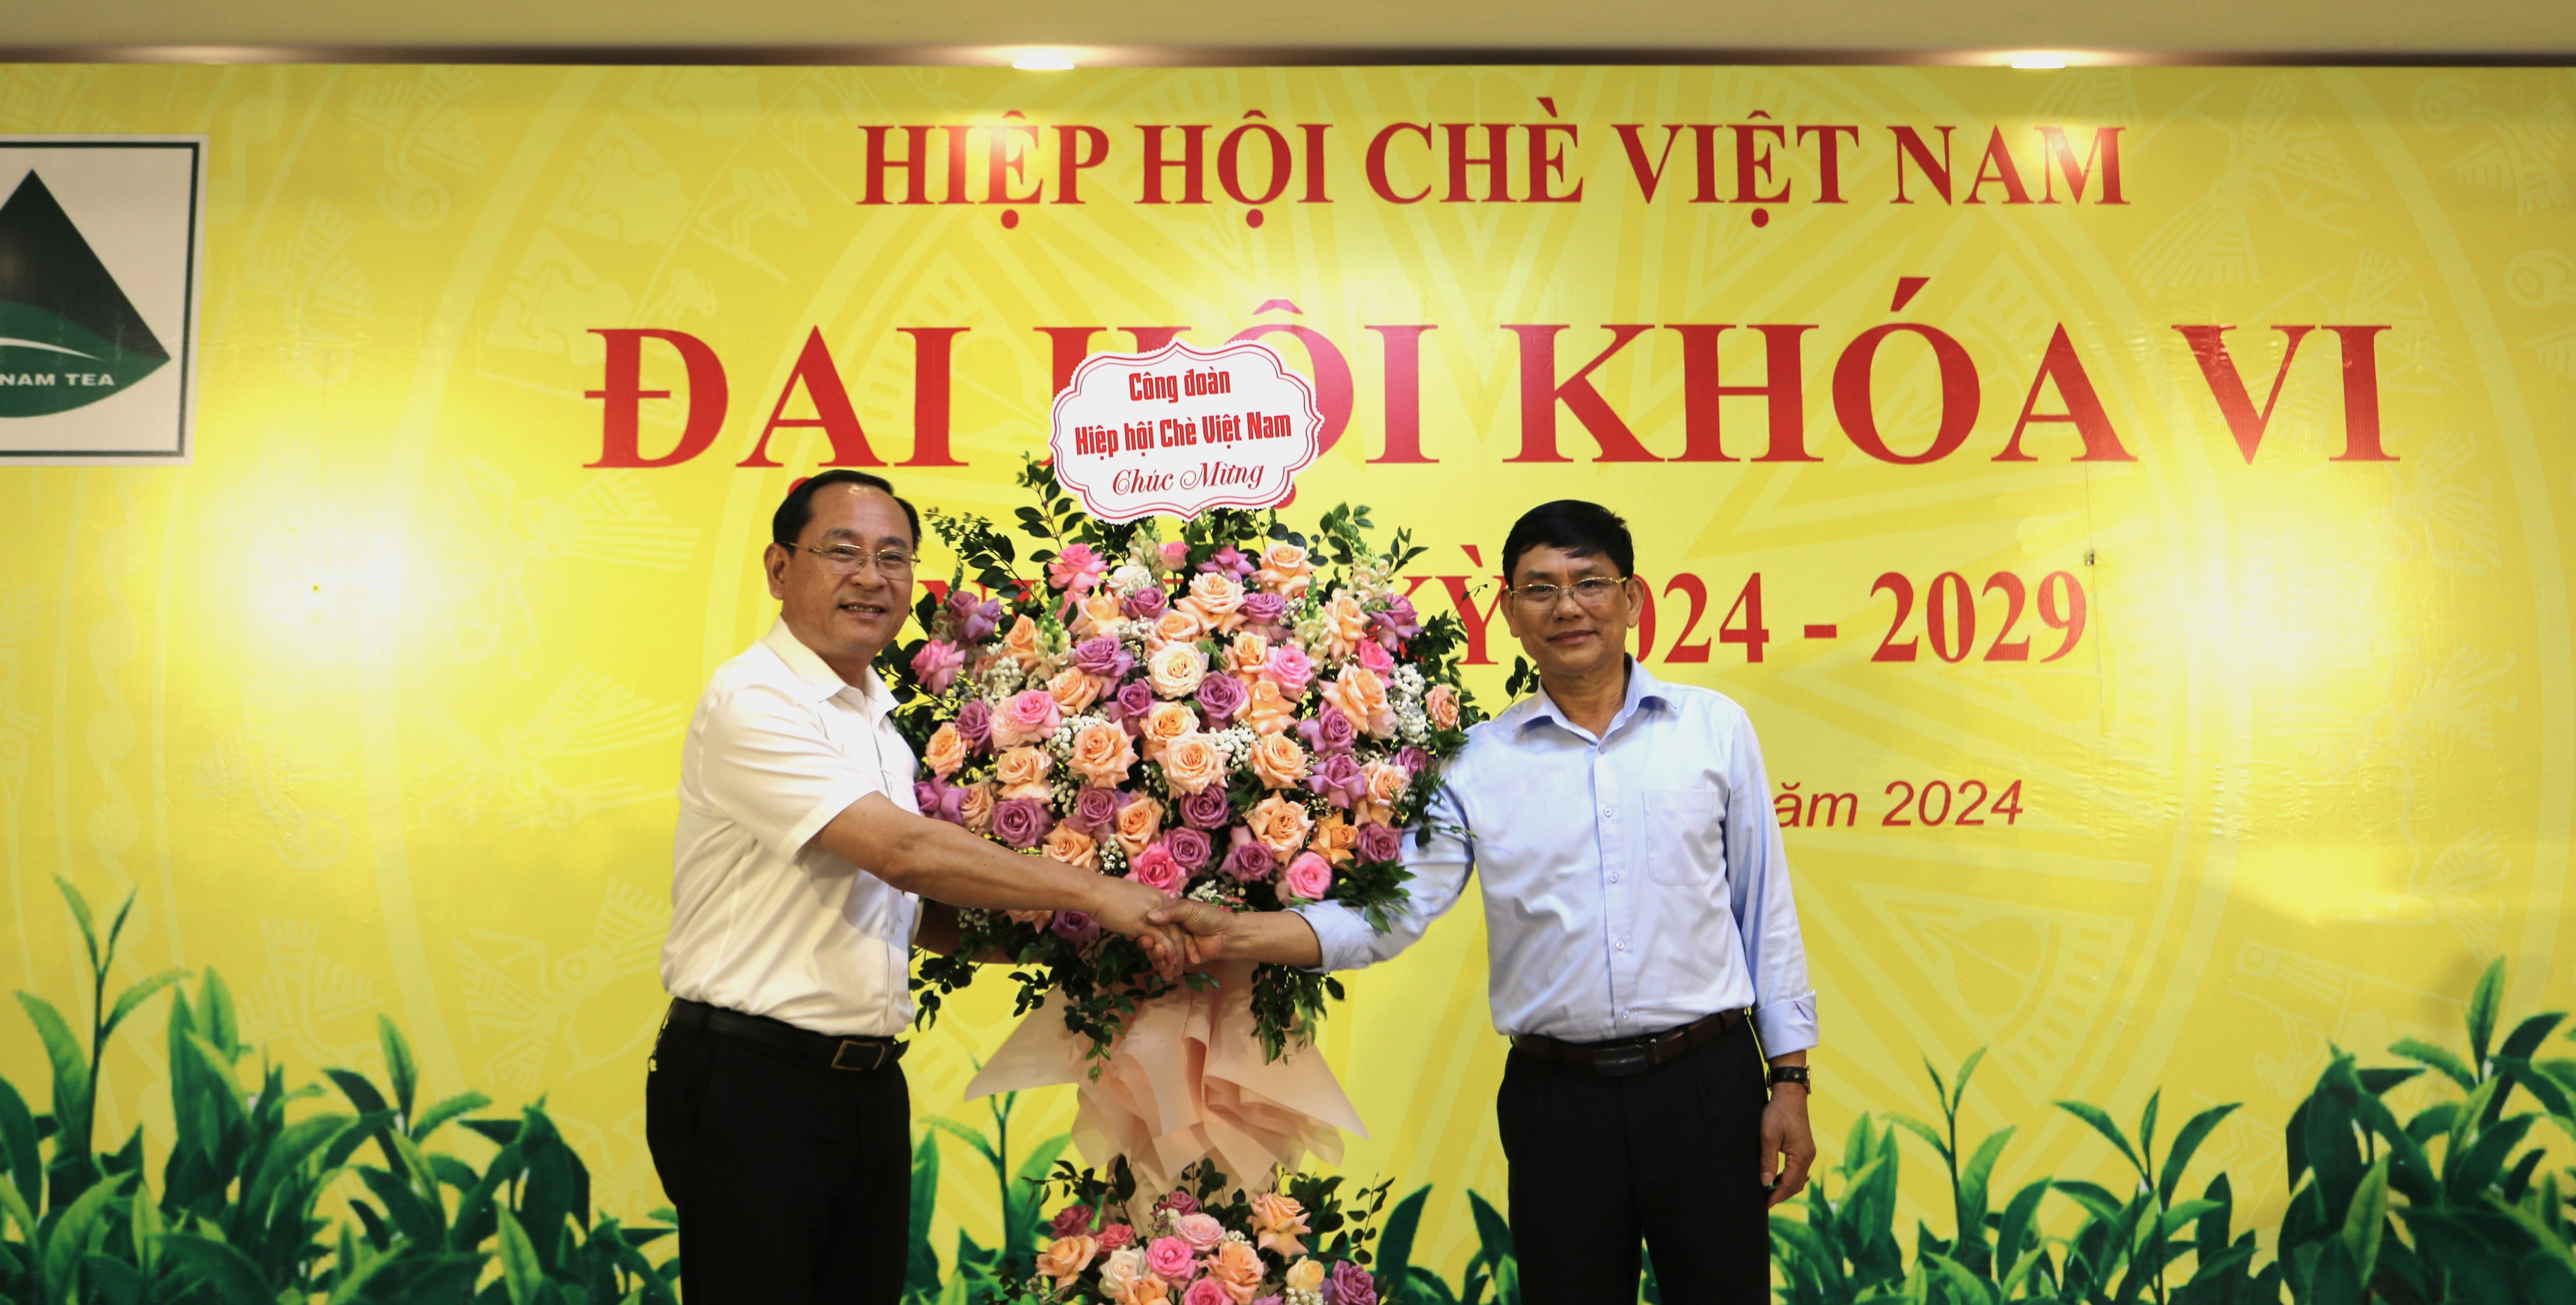 Ông Đinh Thanh Tùng - Chủ tịch Công đoàn Hiệp hội Chè Việt Nam tặng hoa chúc mừng Tân Chủ tịch Hiệp hội Chè Việt Nam 